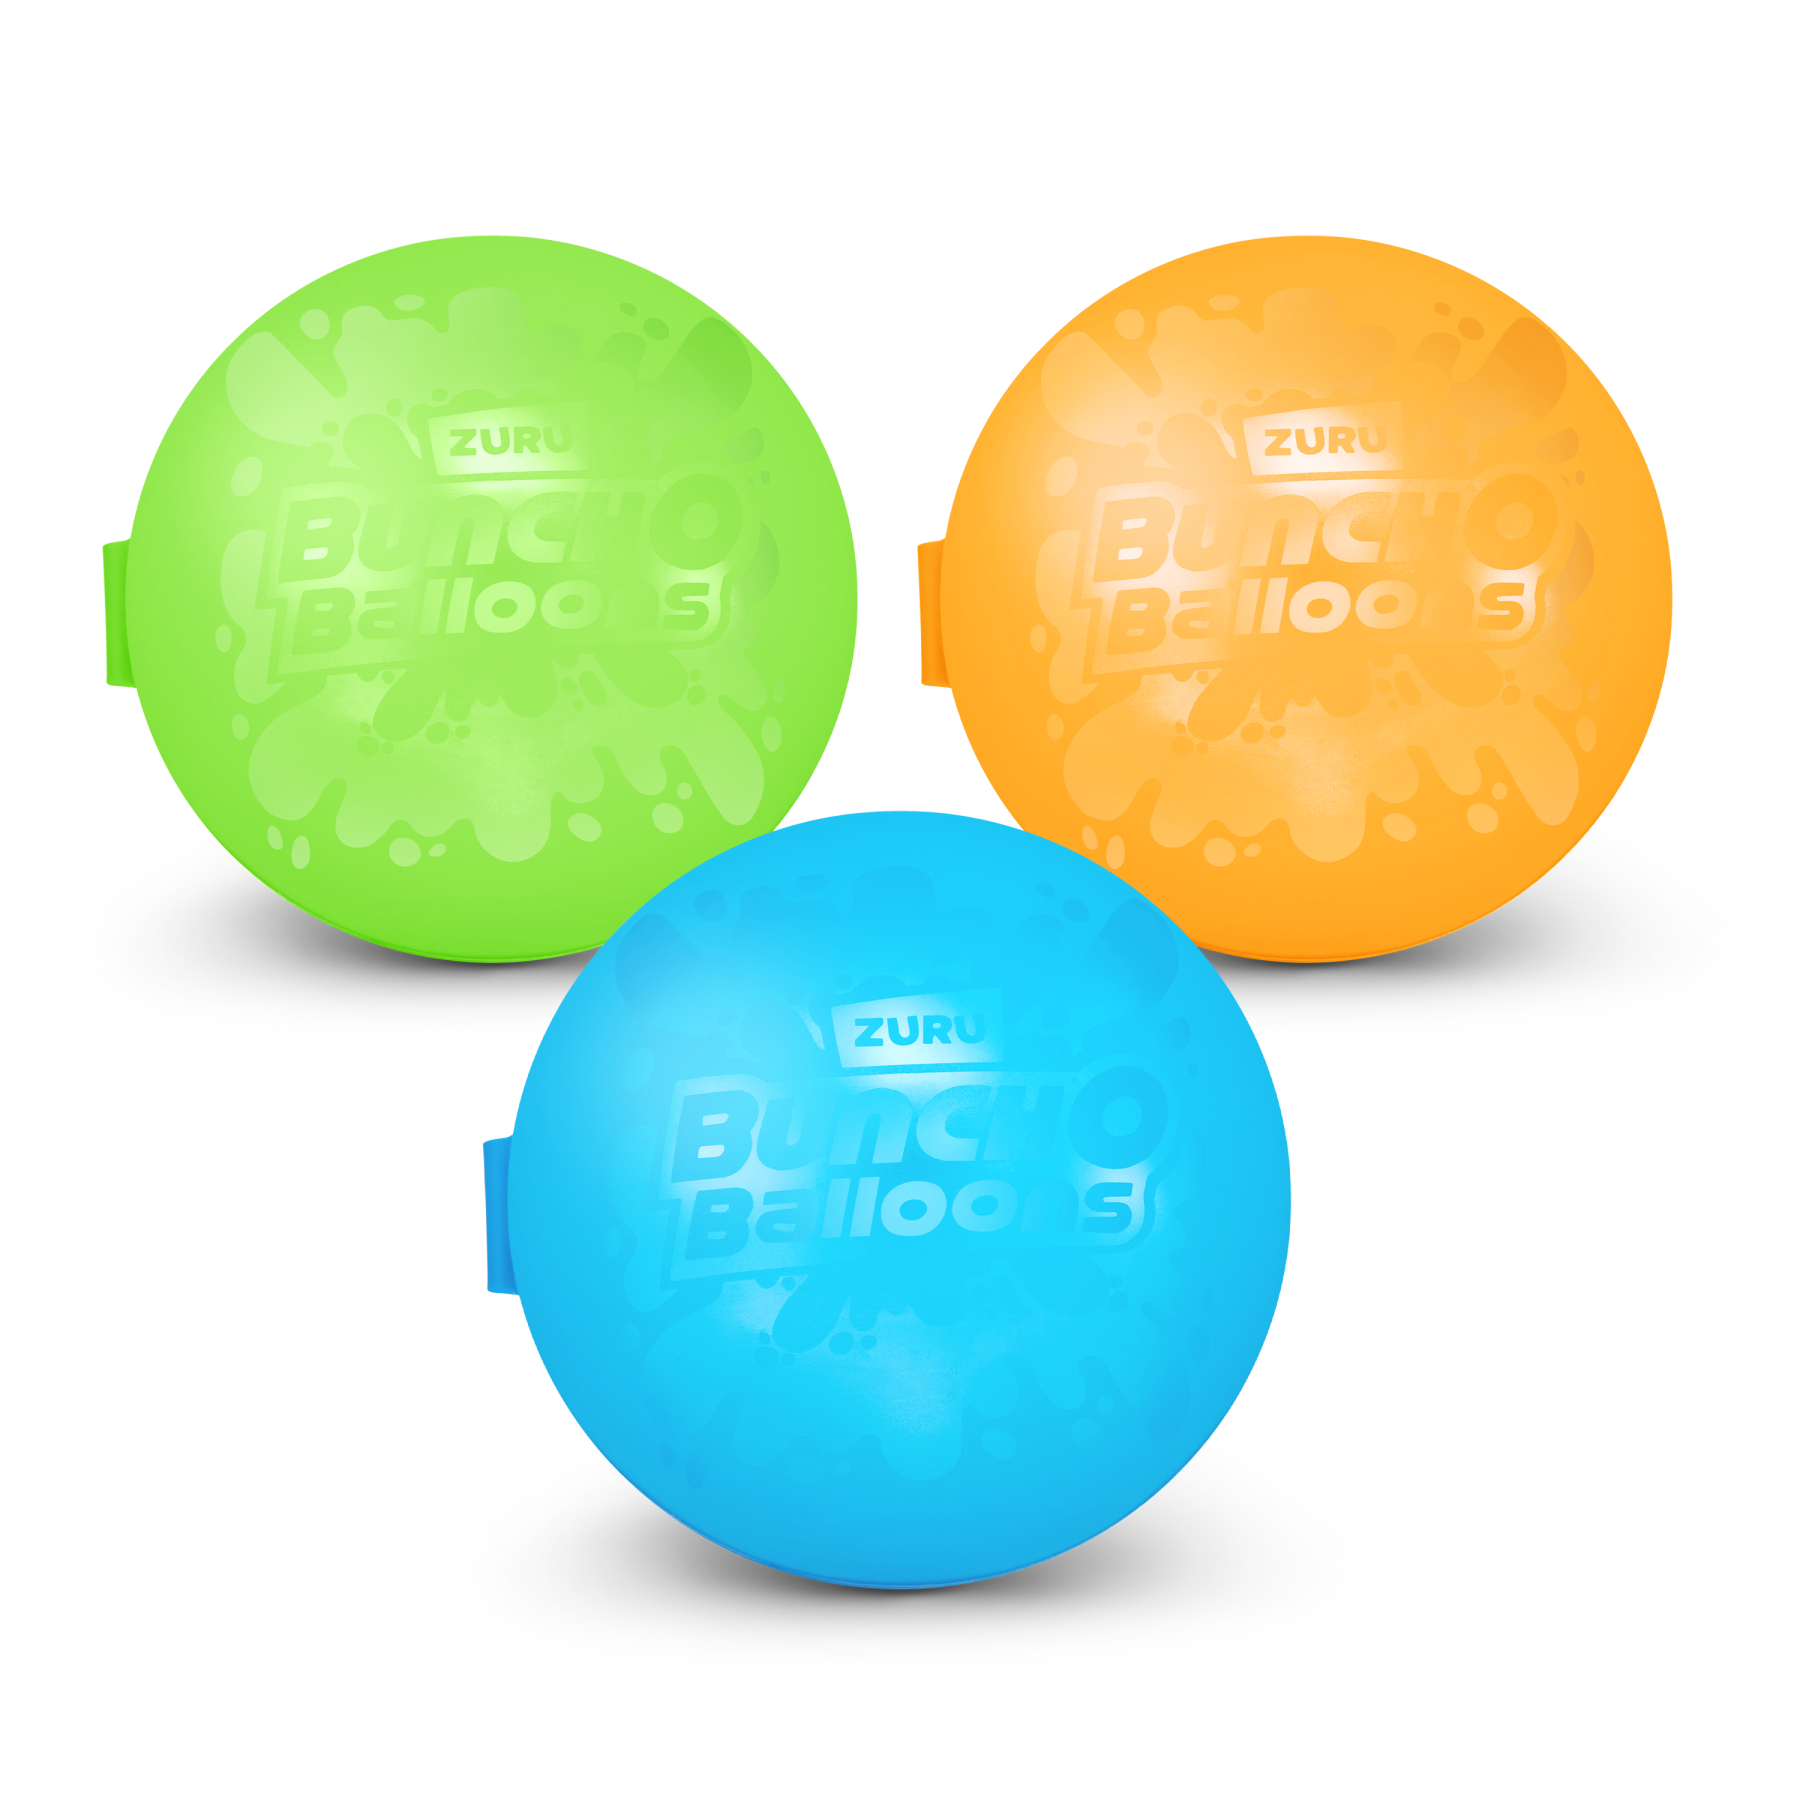 Bunch o balloons confezione da 3 palloncini riutilizzabili - 